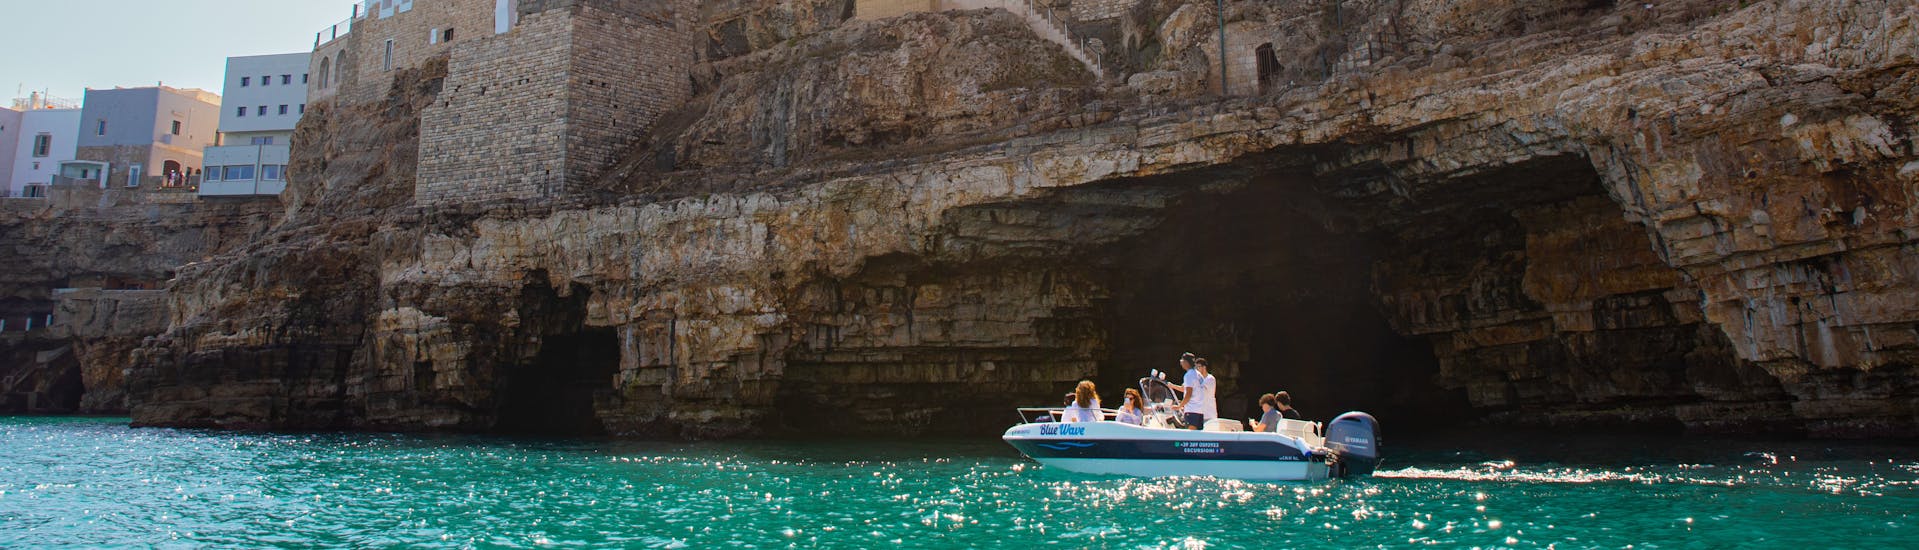 El barco Blue Wave costeando las cuevas de Polignano a Mare durante la excursión en barco a las cuevas de Polignano a Mare con aperitivo con Blue Wave.